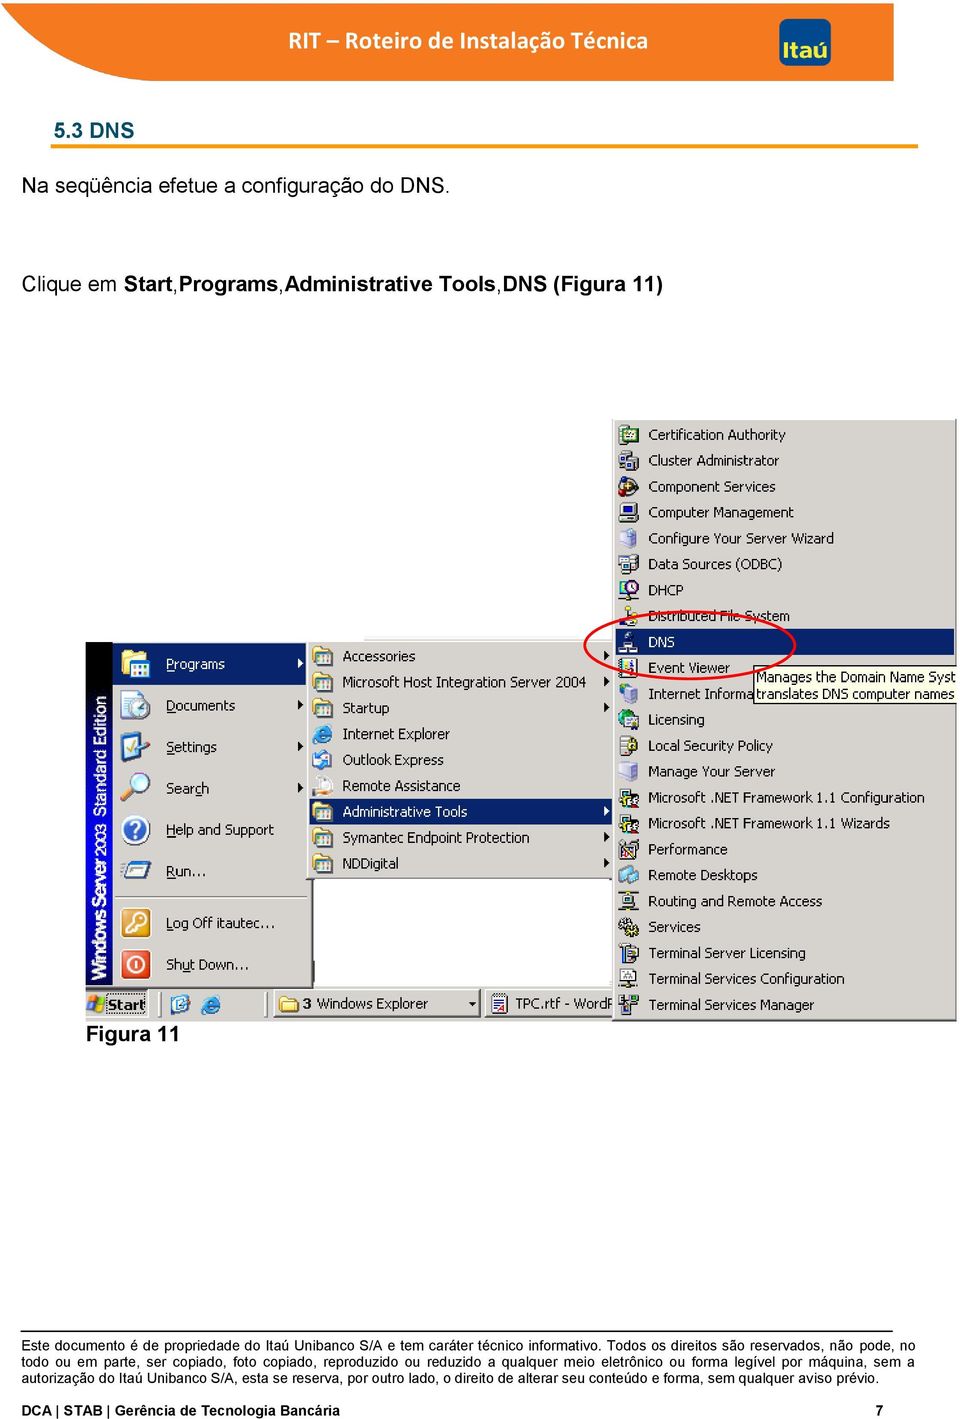 Clique em Start,Programs,Administrative